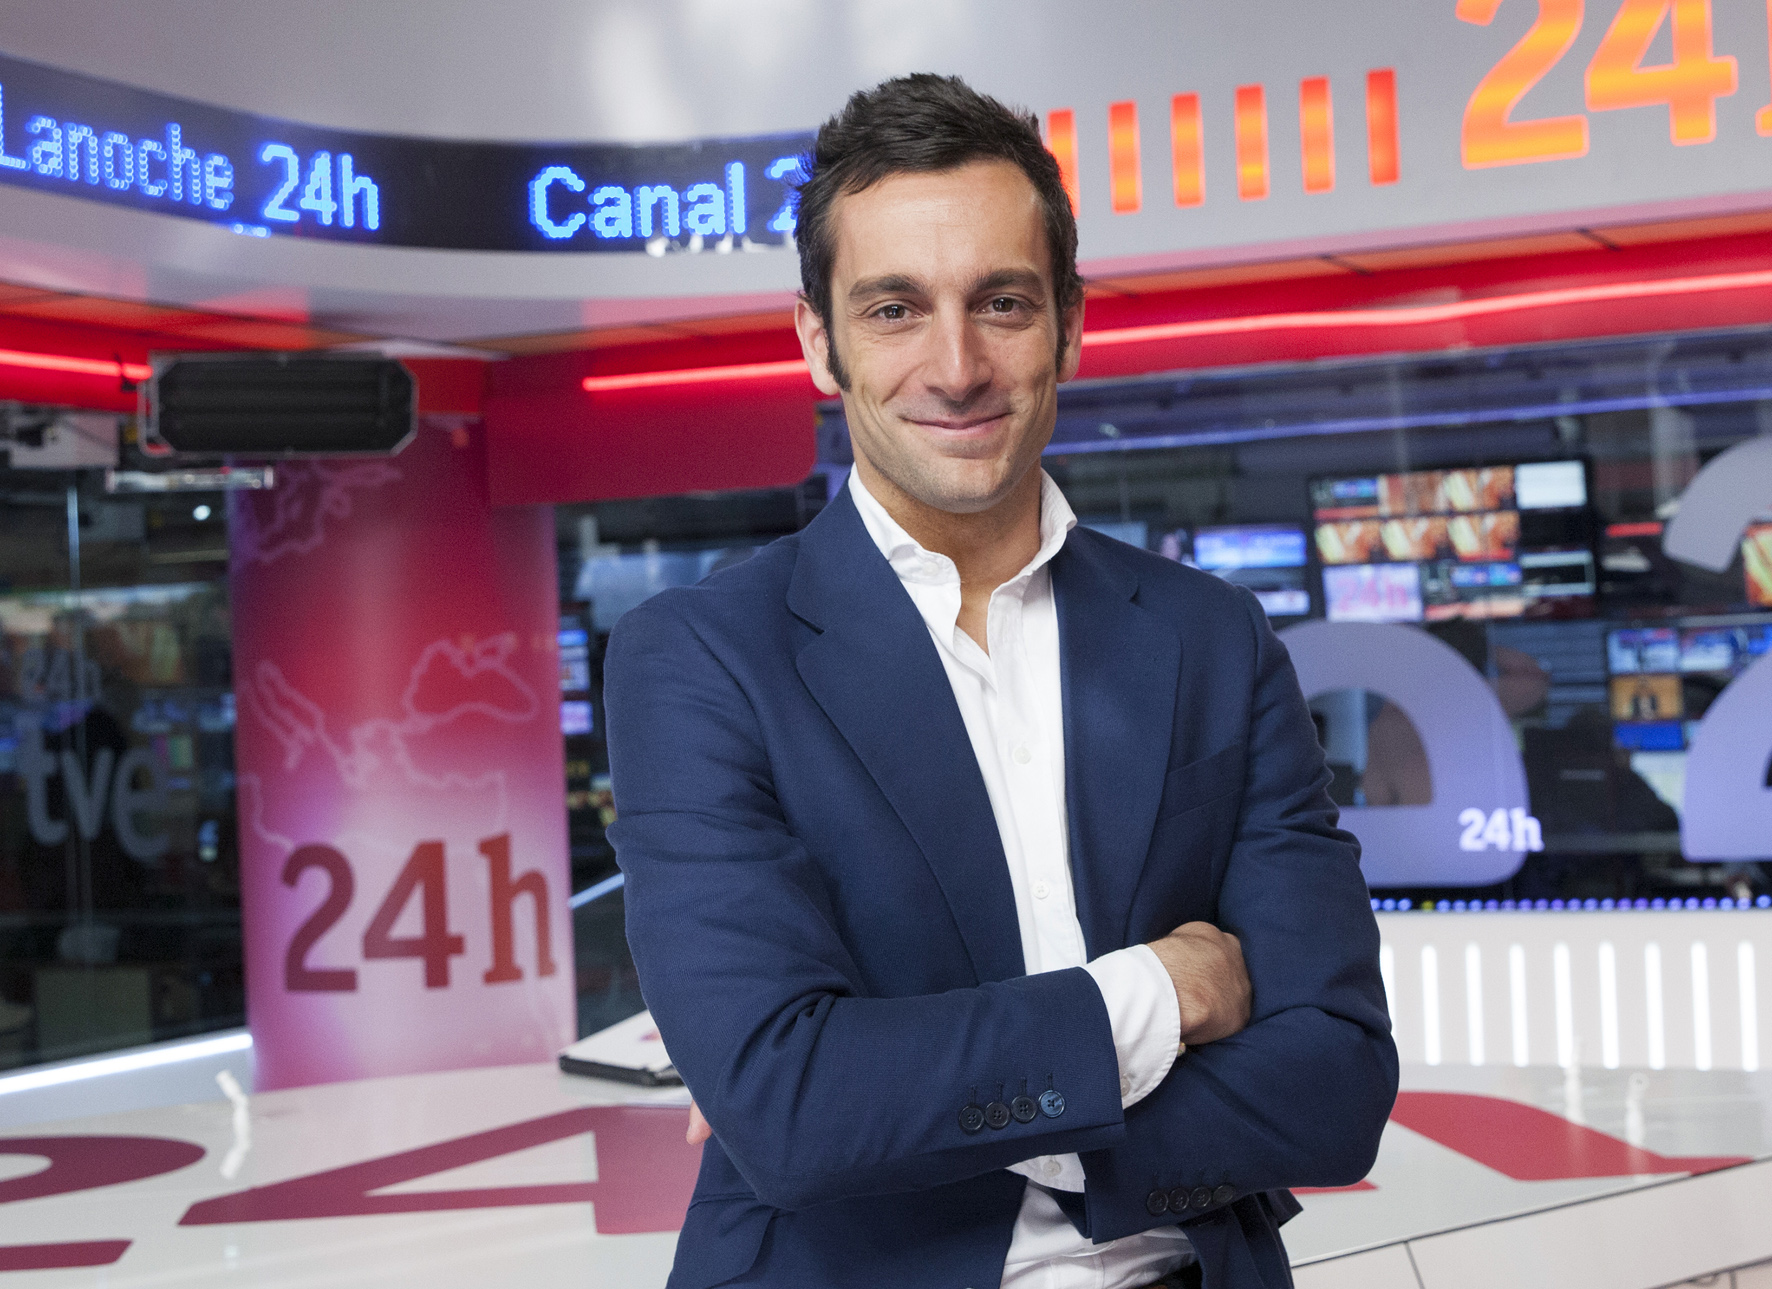 Álvaro Zancajo sigue el camino previsto en su llegada a TVE: ahora un telediario en el Canal 24 Horas que dirige. Foto RTVE